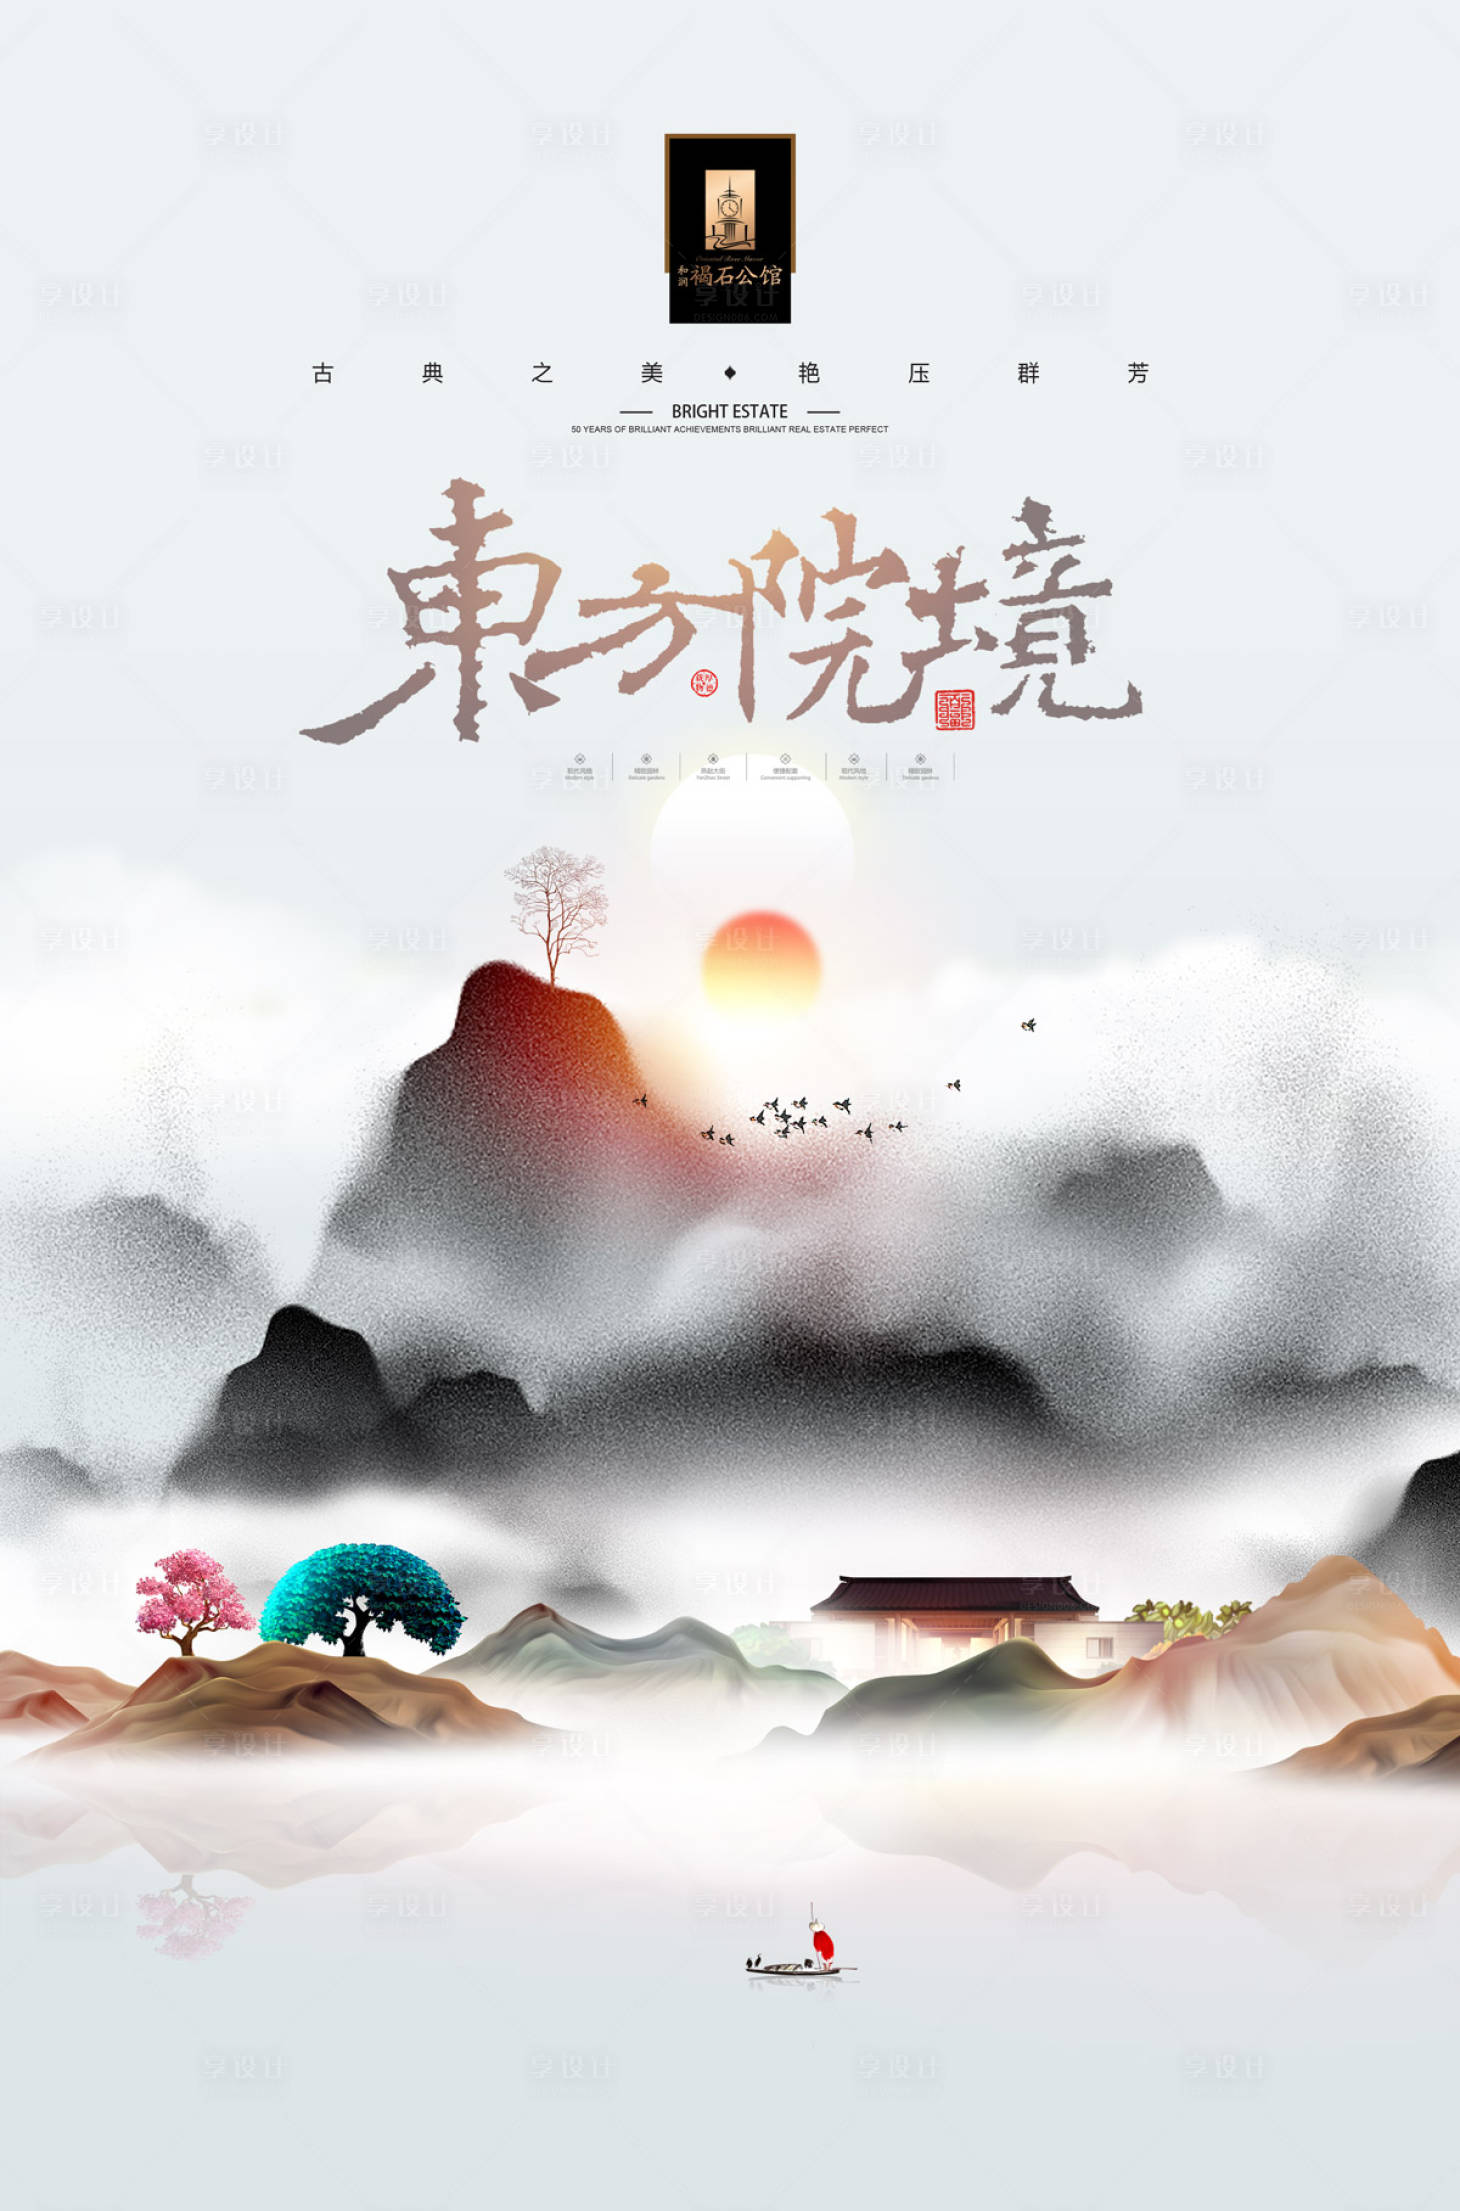 大气水墨风中国风房地产广告海报